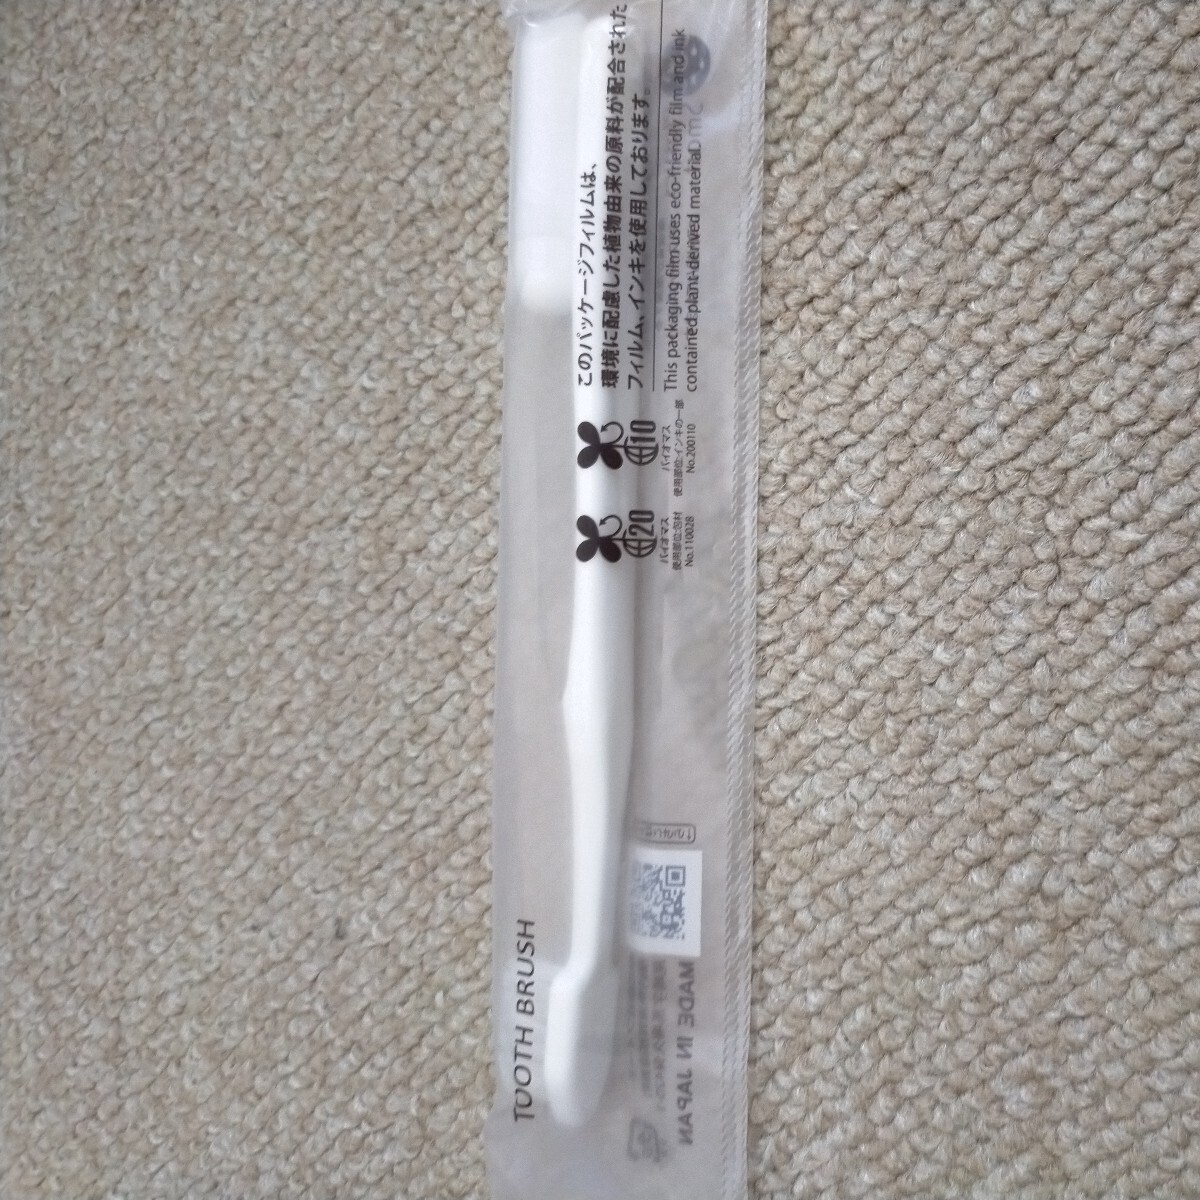  зубная щетка отель amenity 80 шт. комплект одноразовый сделано в Японии 